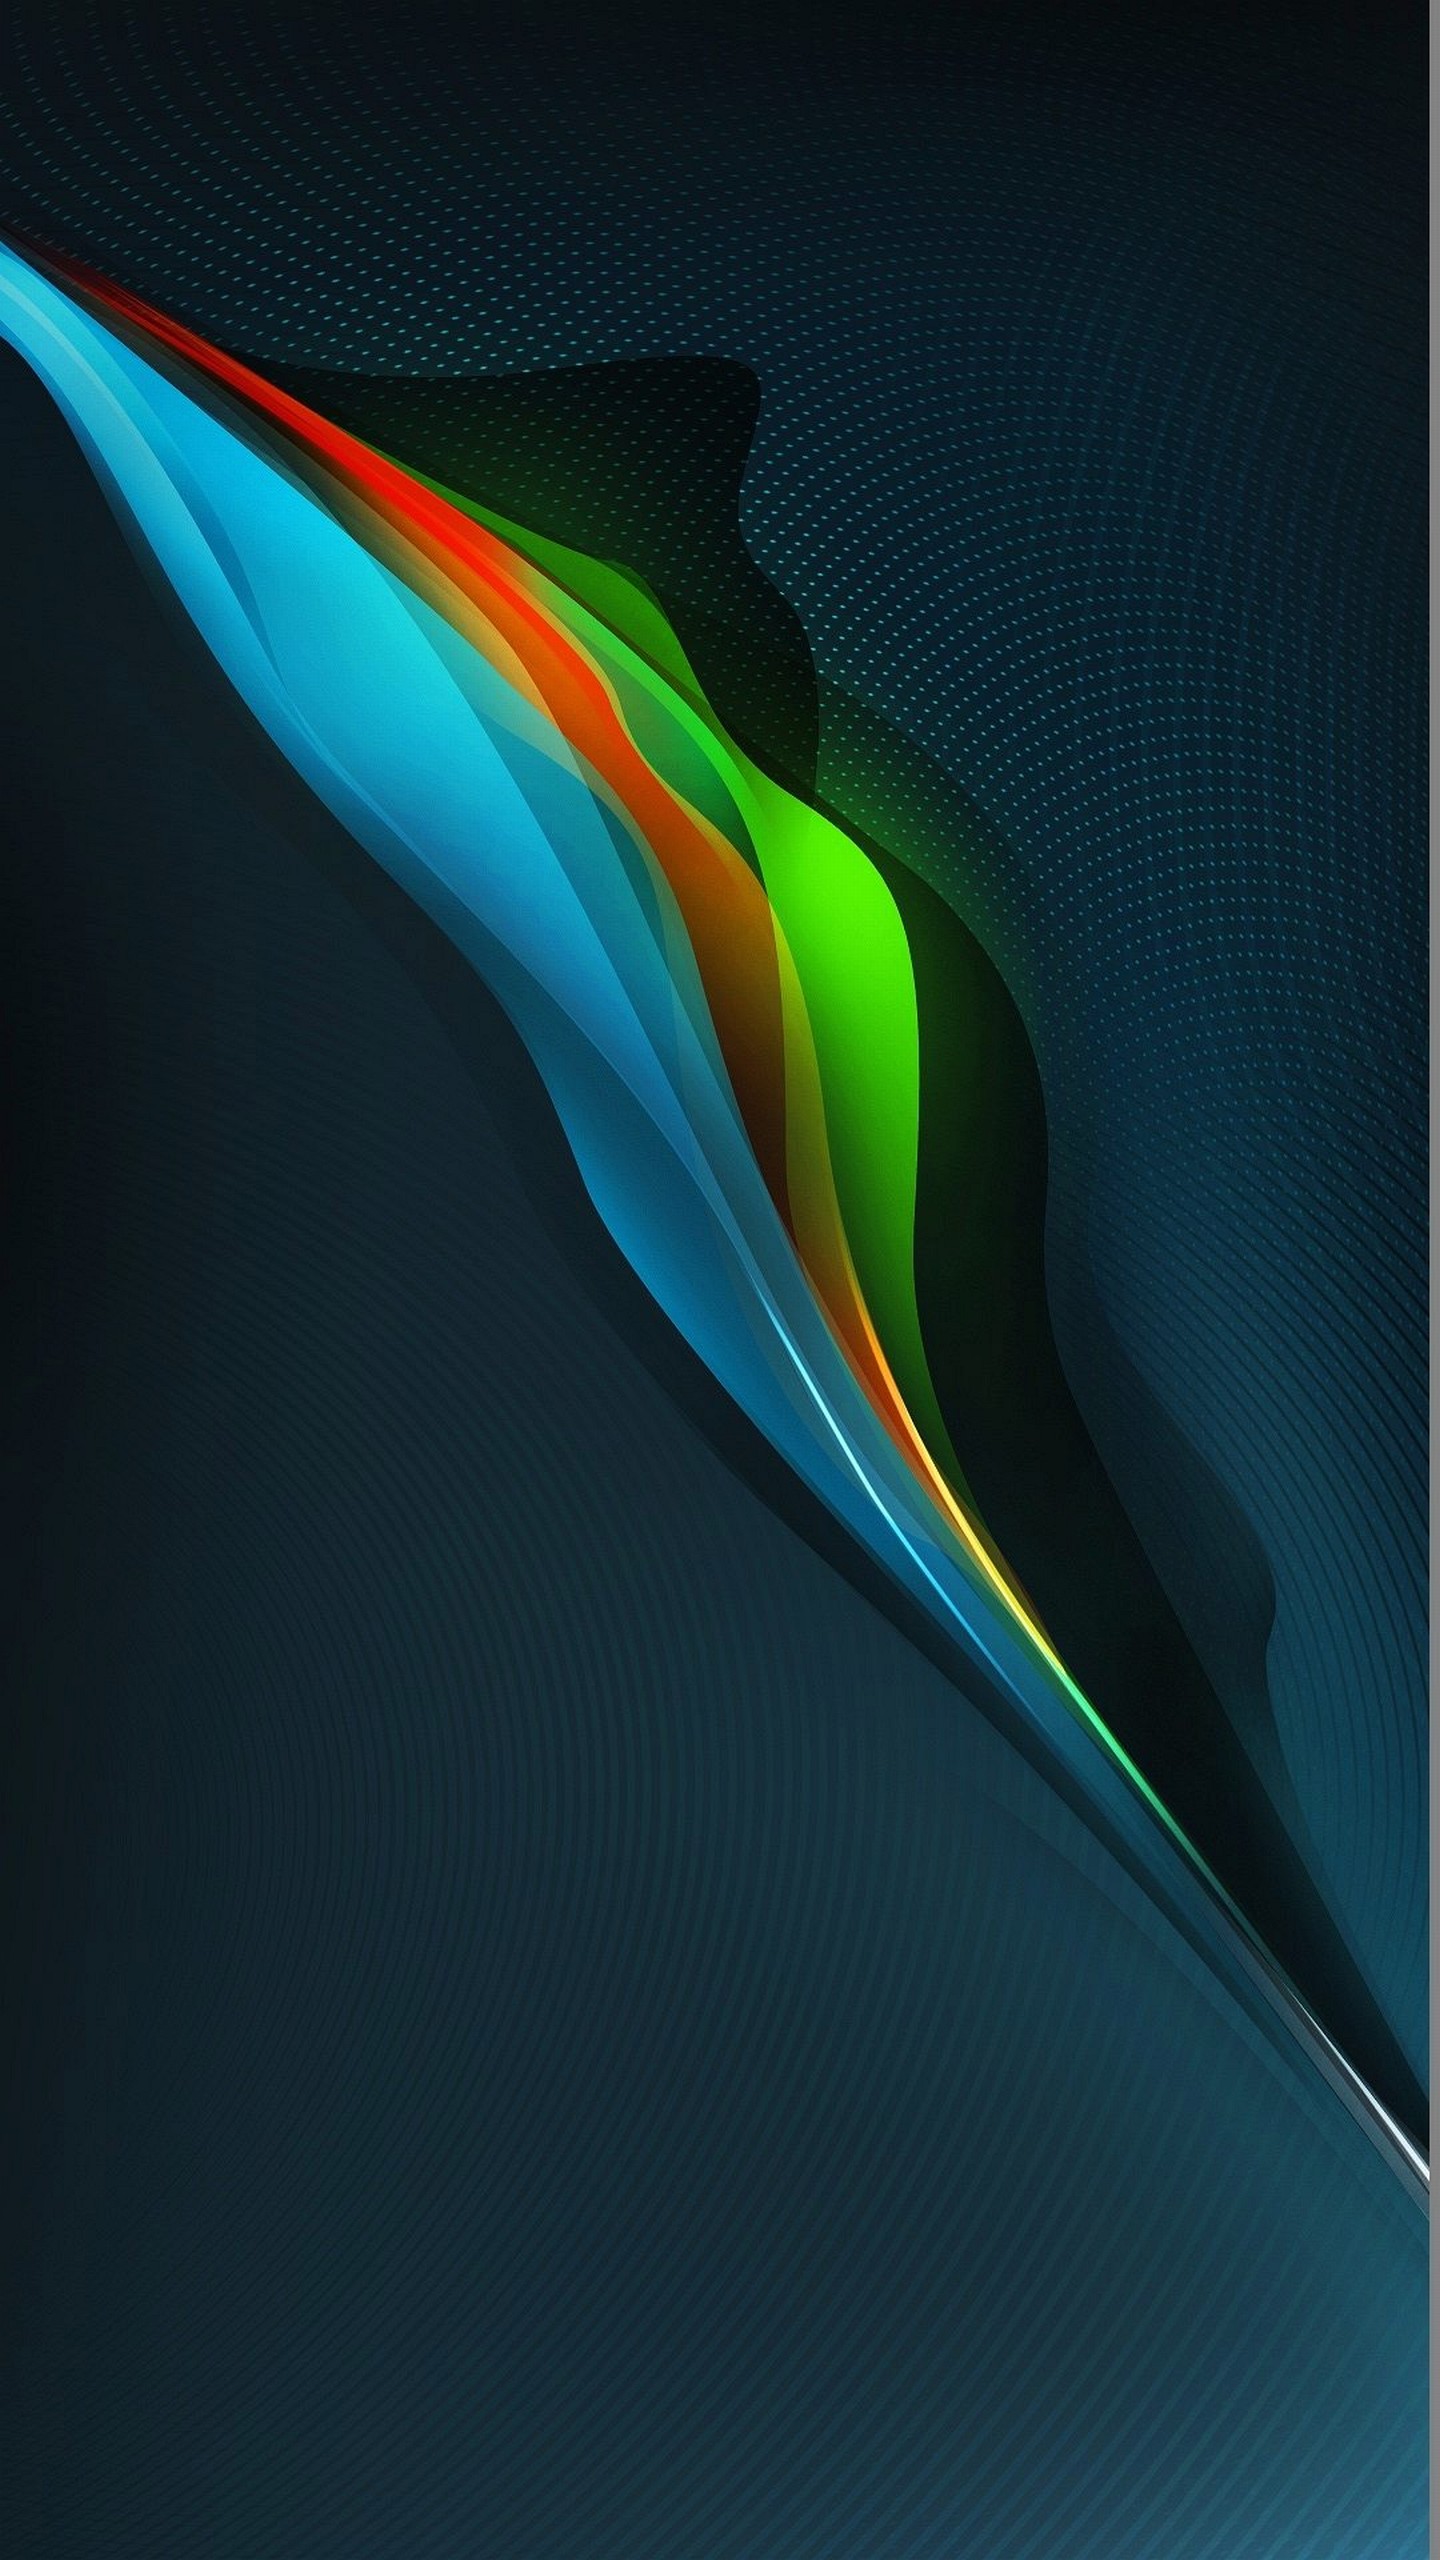 Wallpaper Sony Xperia Z4 Quad Hd 1440 2560 285 1440 X 2560